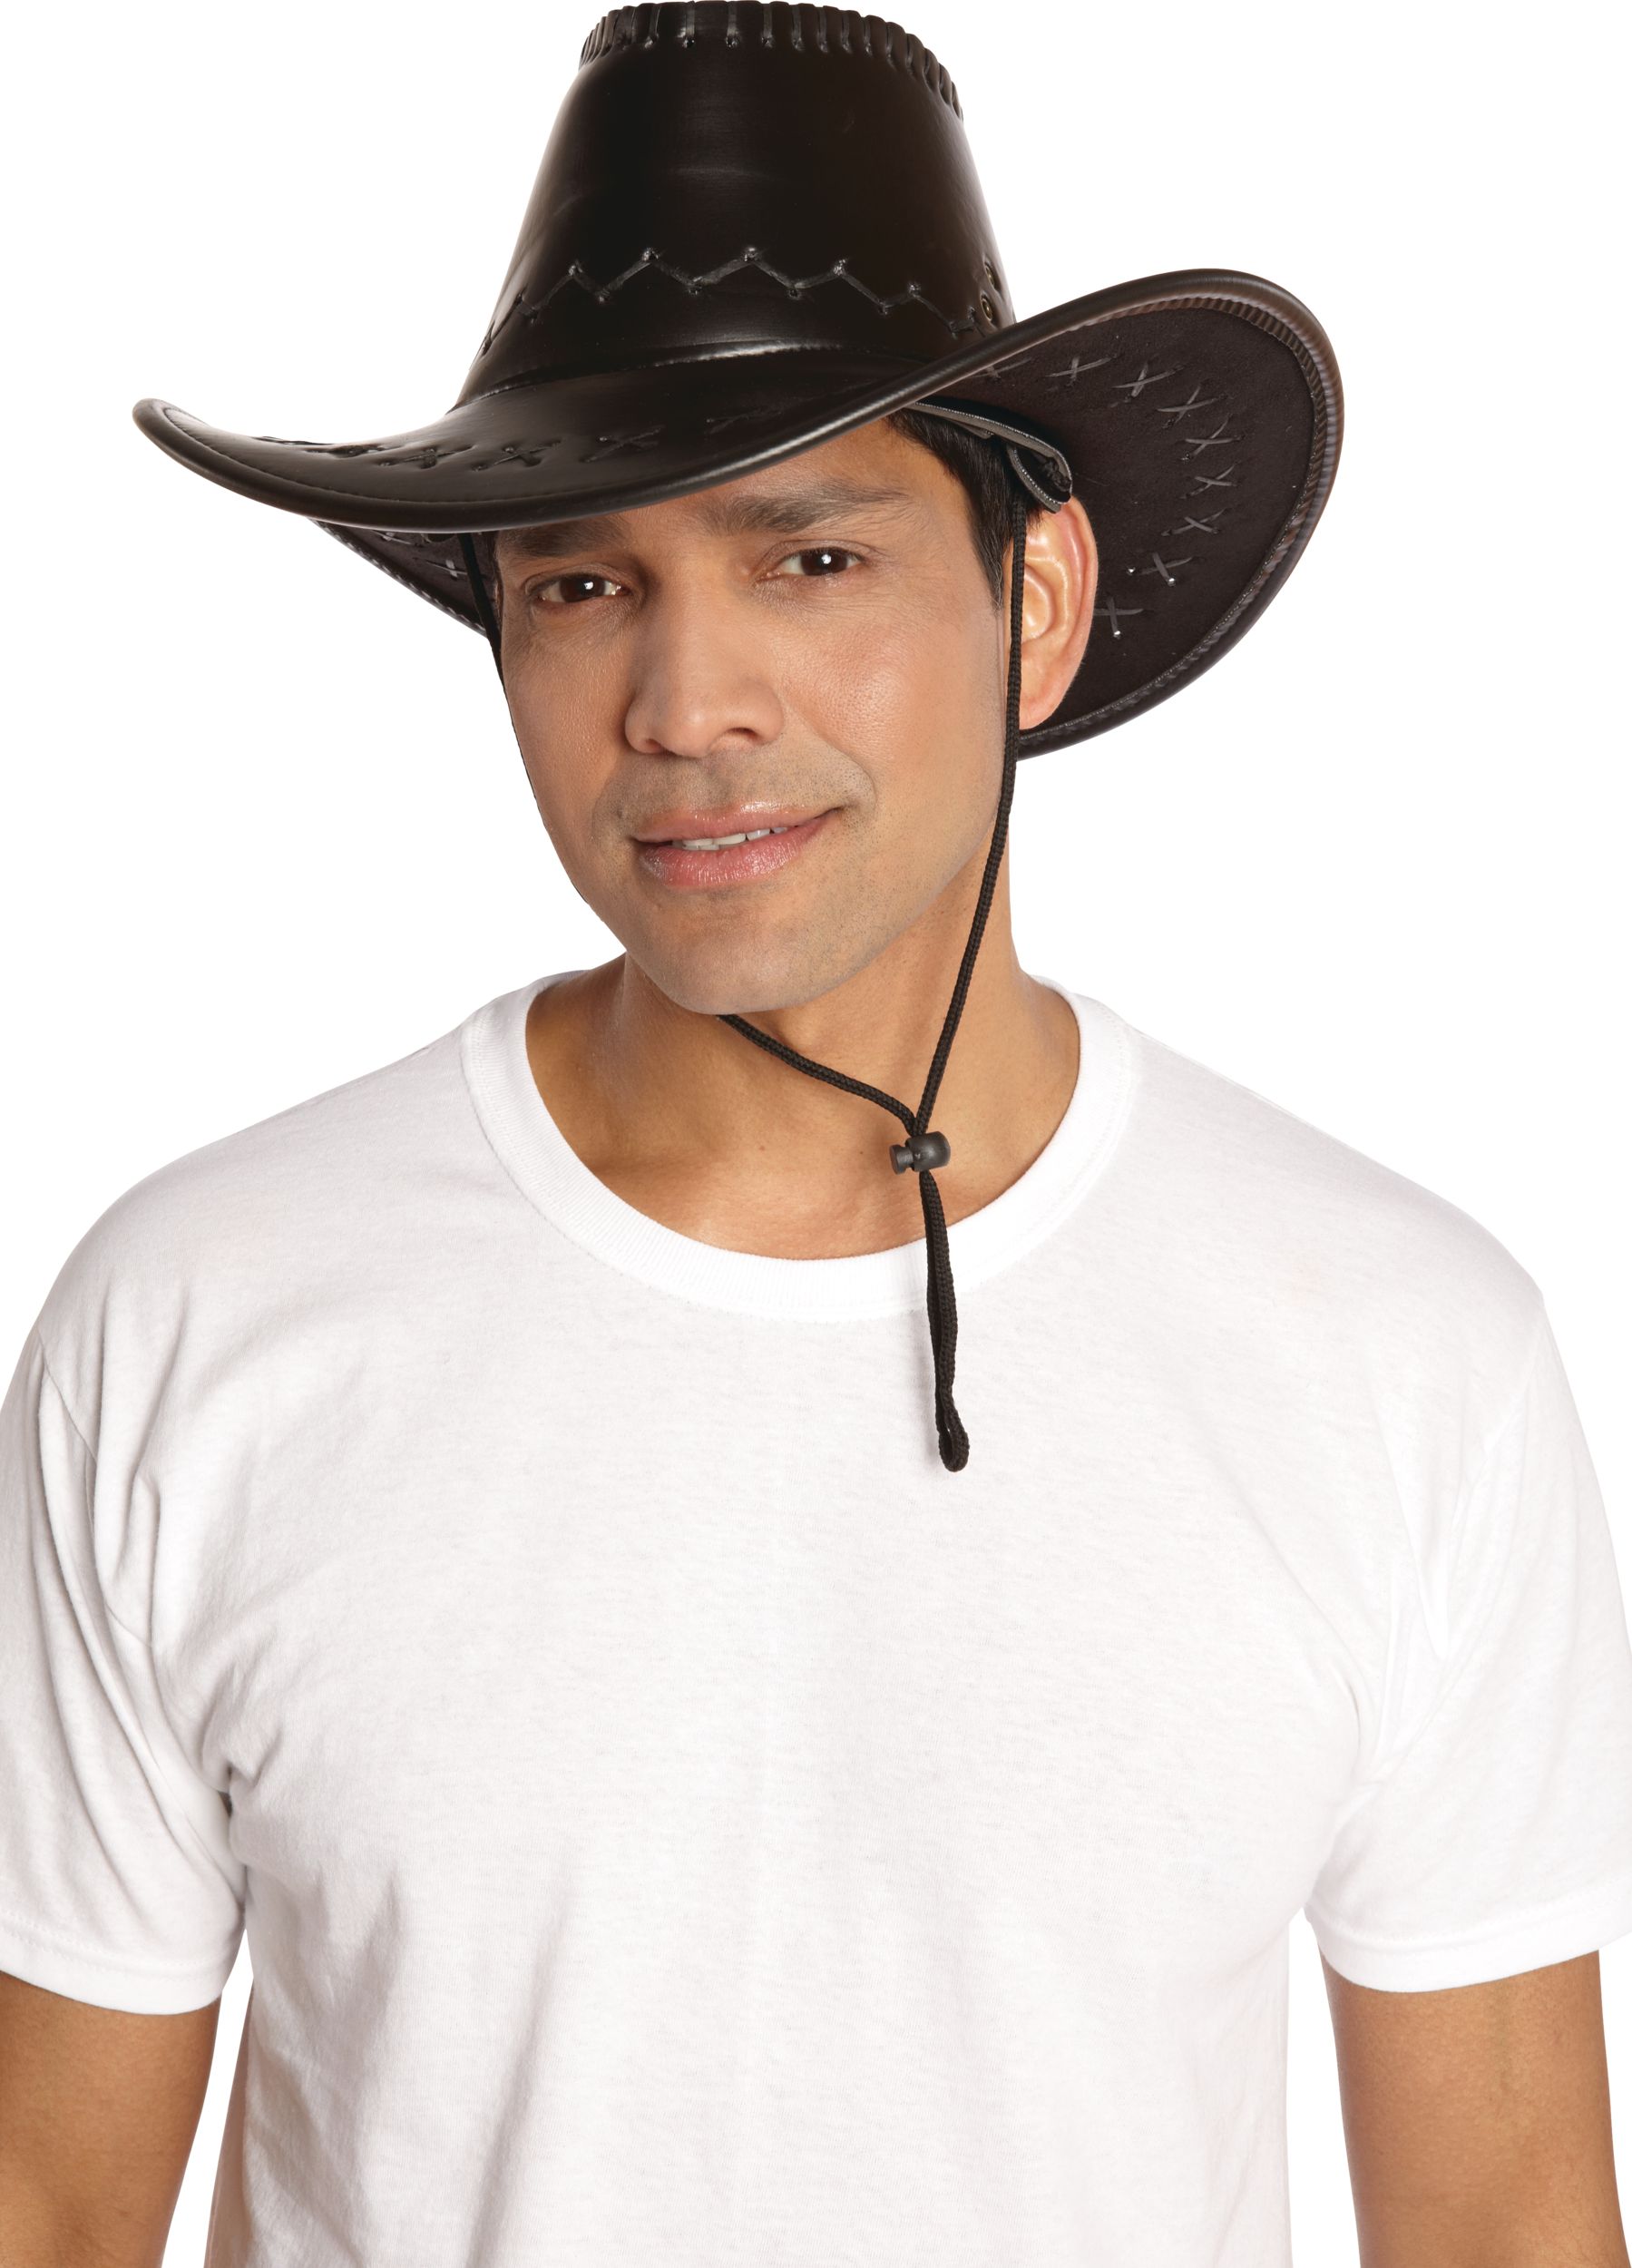 Western Cowboy Boot Belt Buckle, Black/Silver, 4-in, Wearable